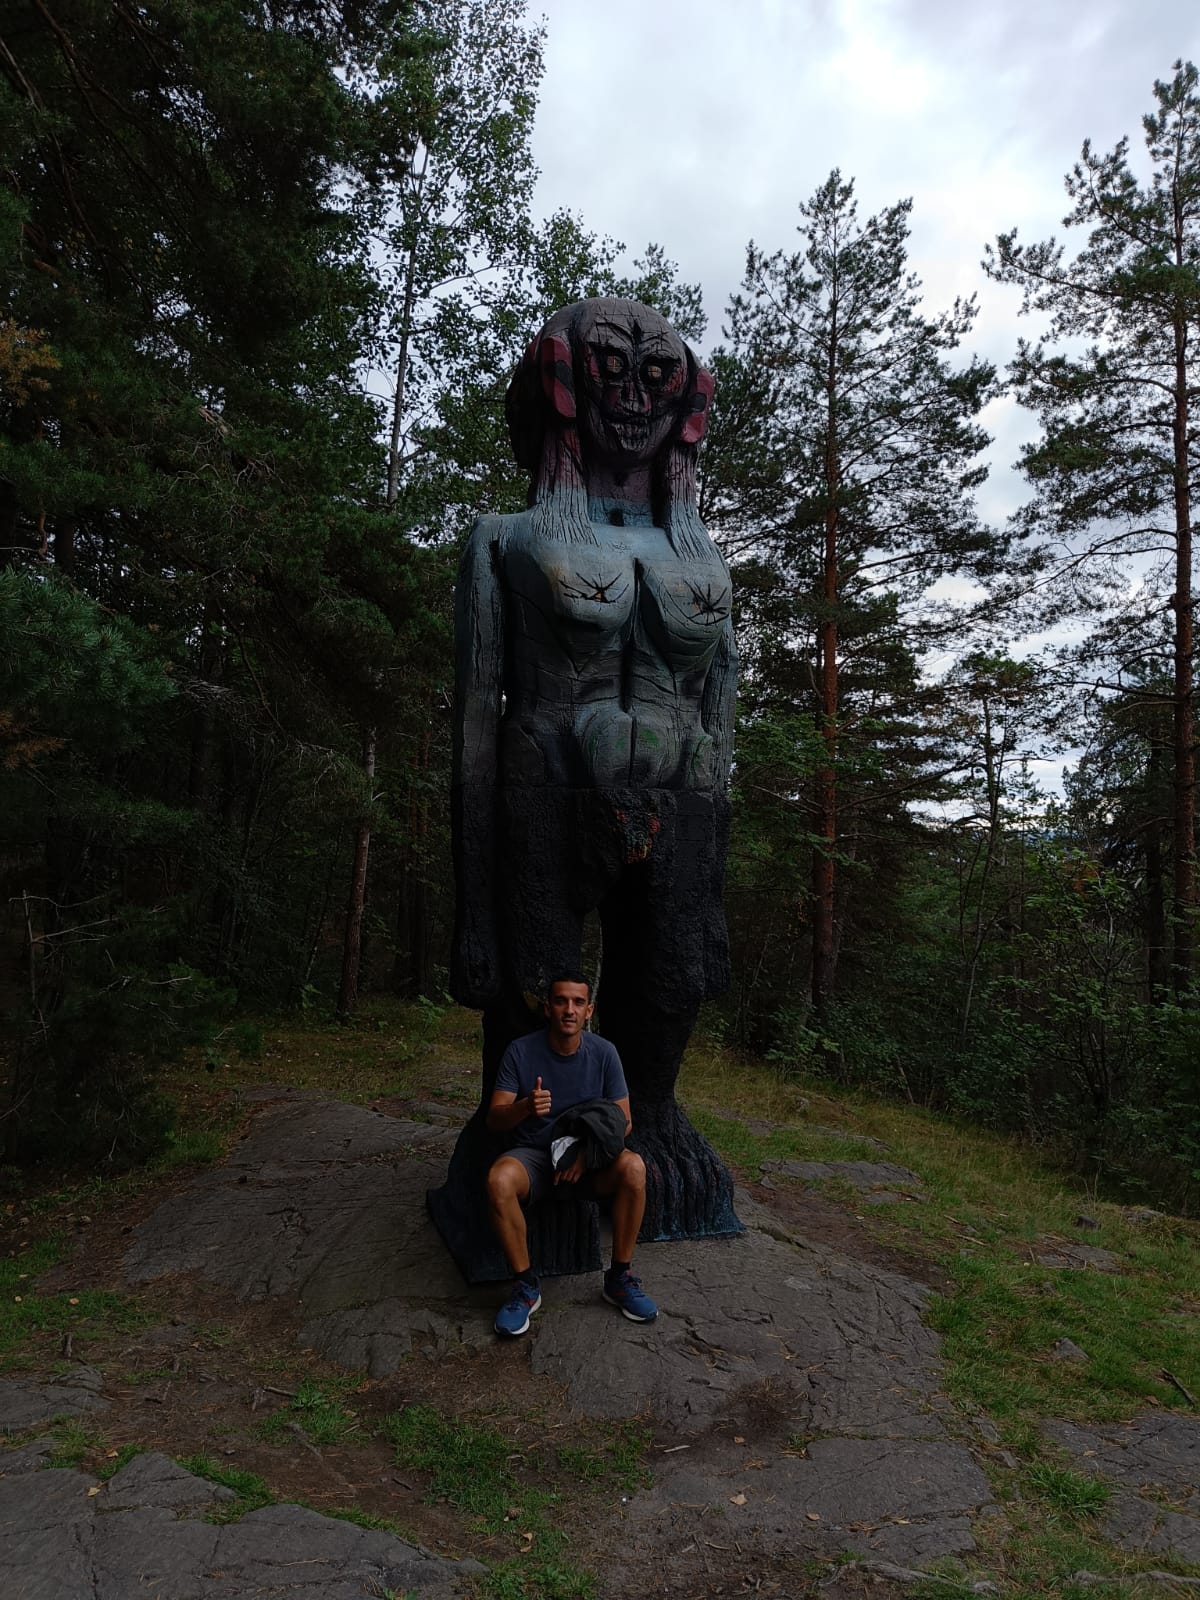 Parque Ekerberg (estatua) - Qué ver en Oslo